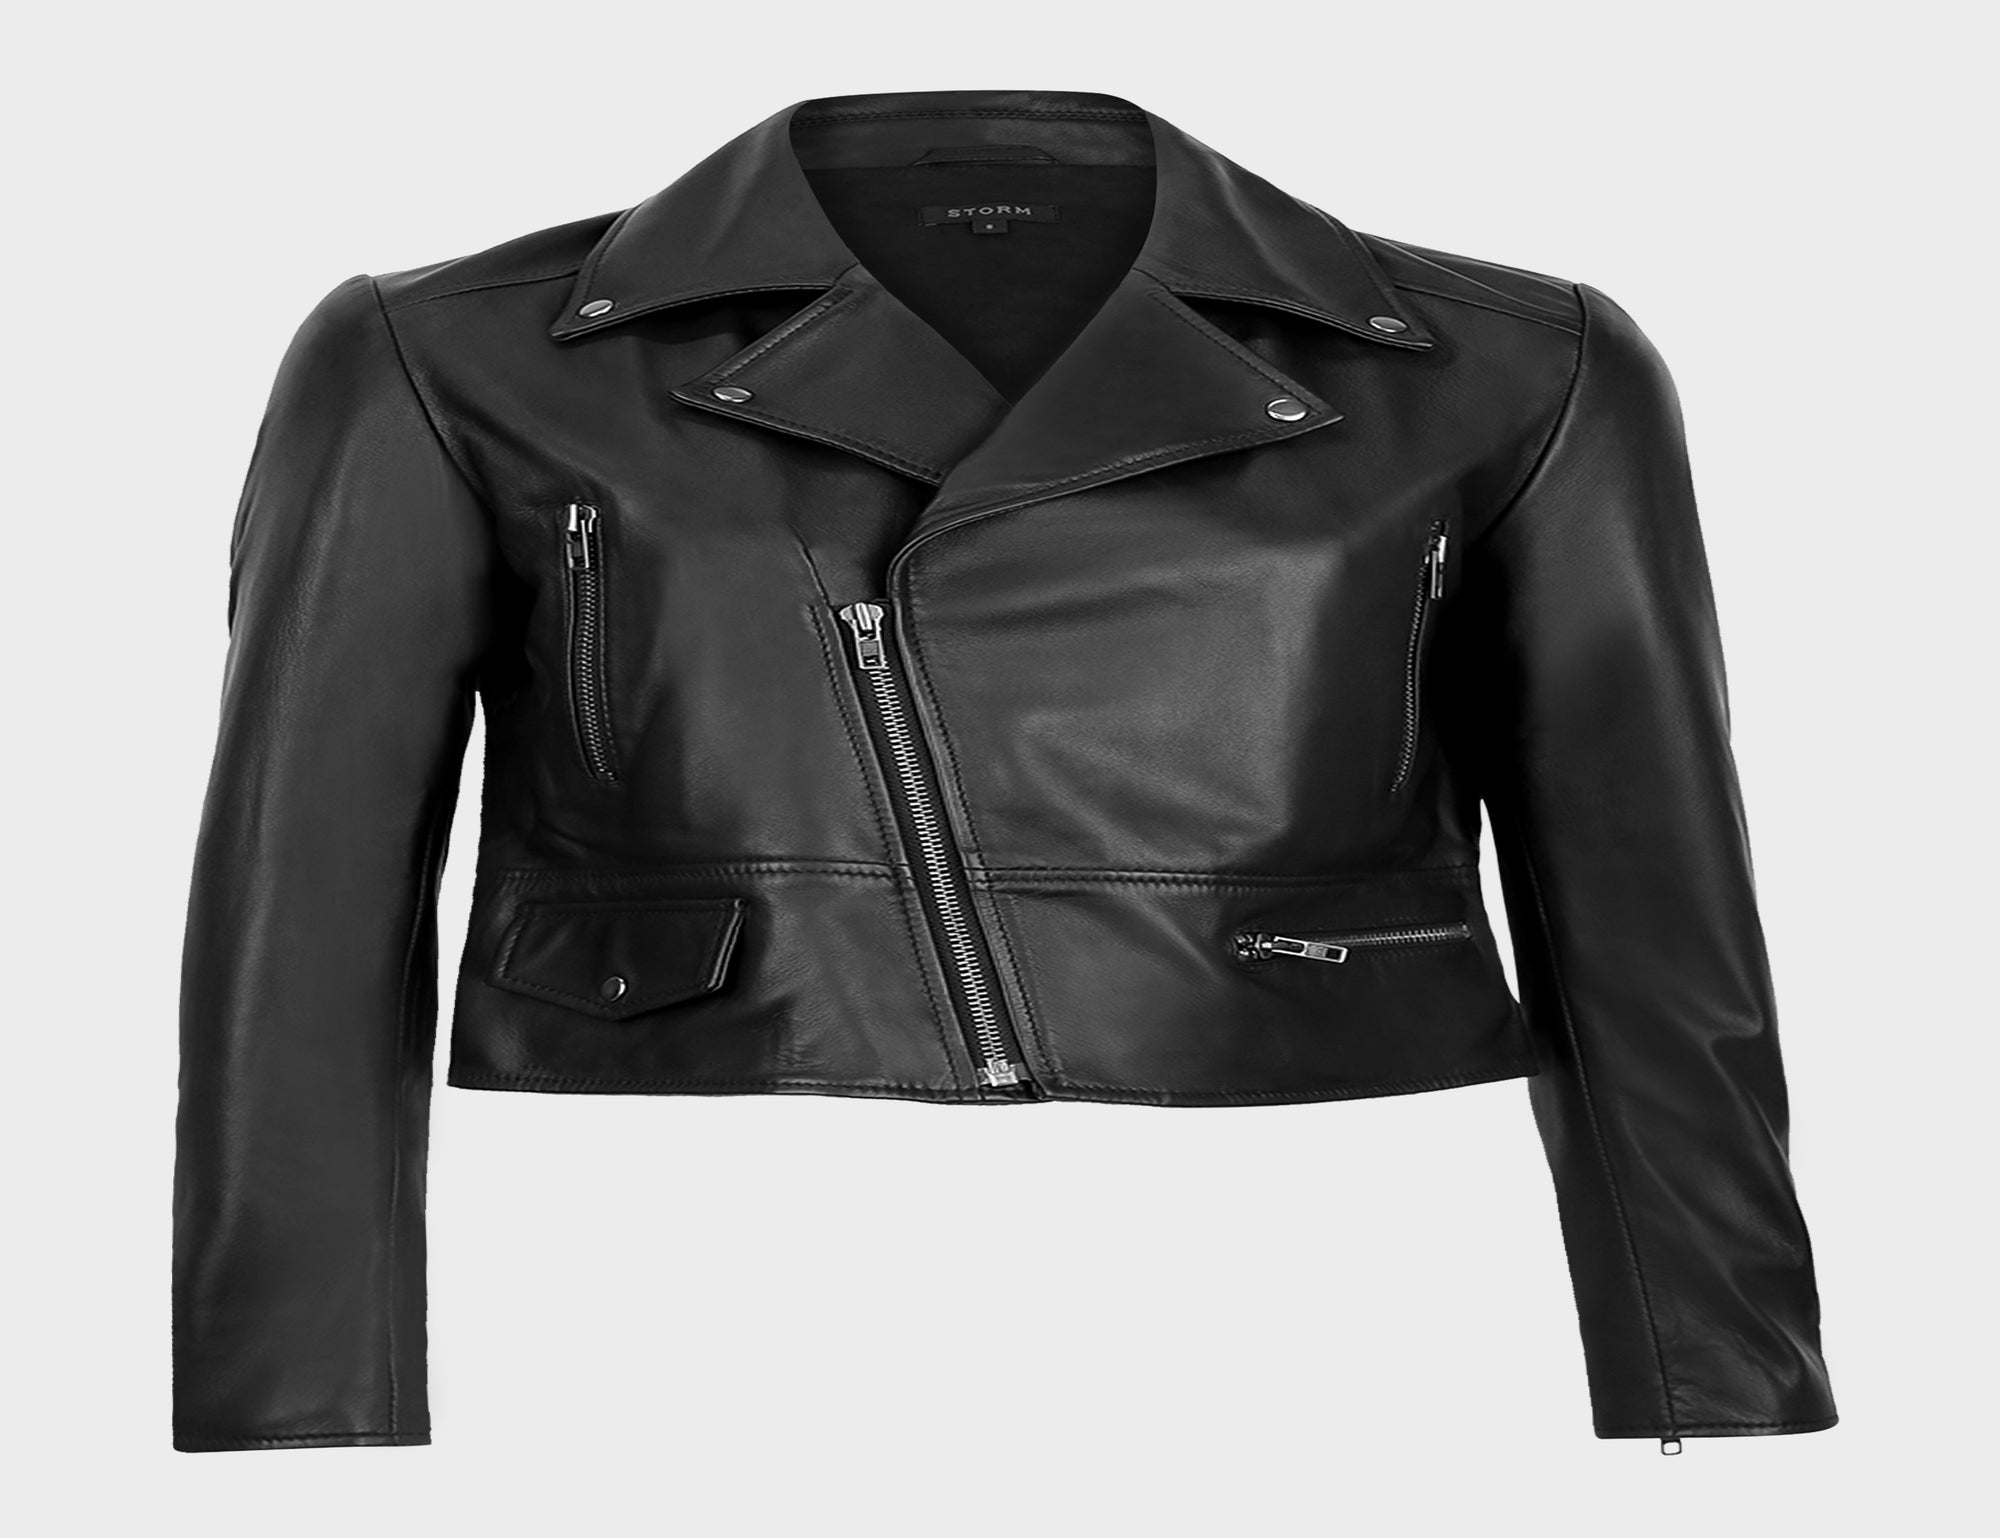 Nostalgia Leather Jacket - Black - Jackets - Short - Women's Clothing ...